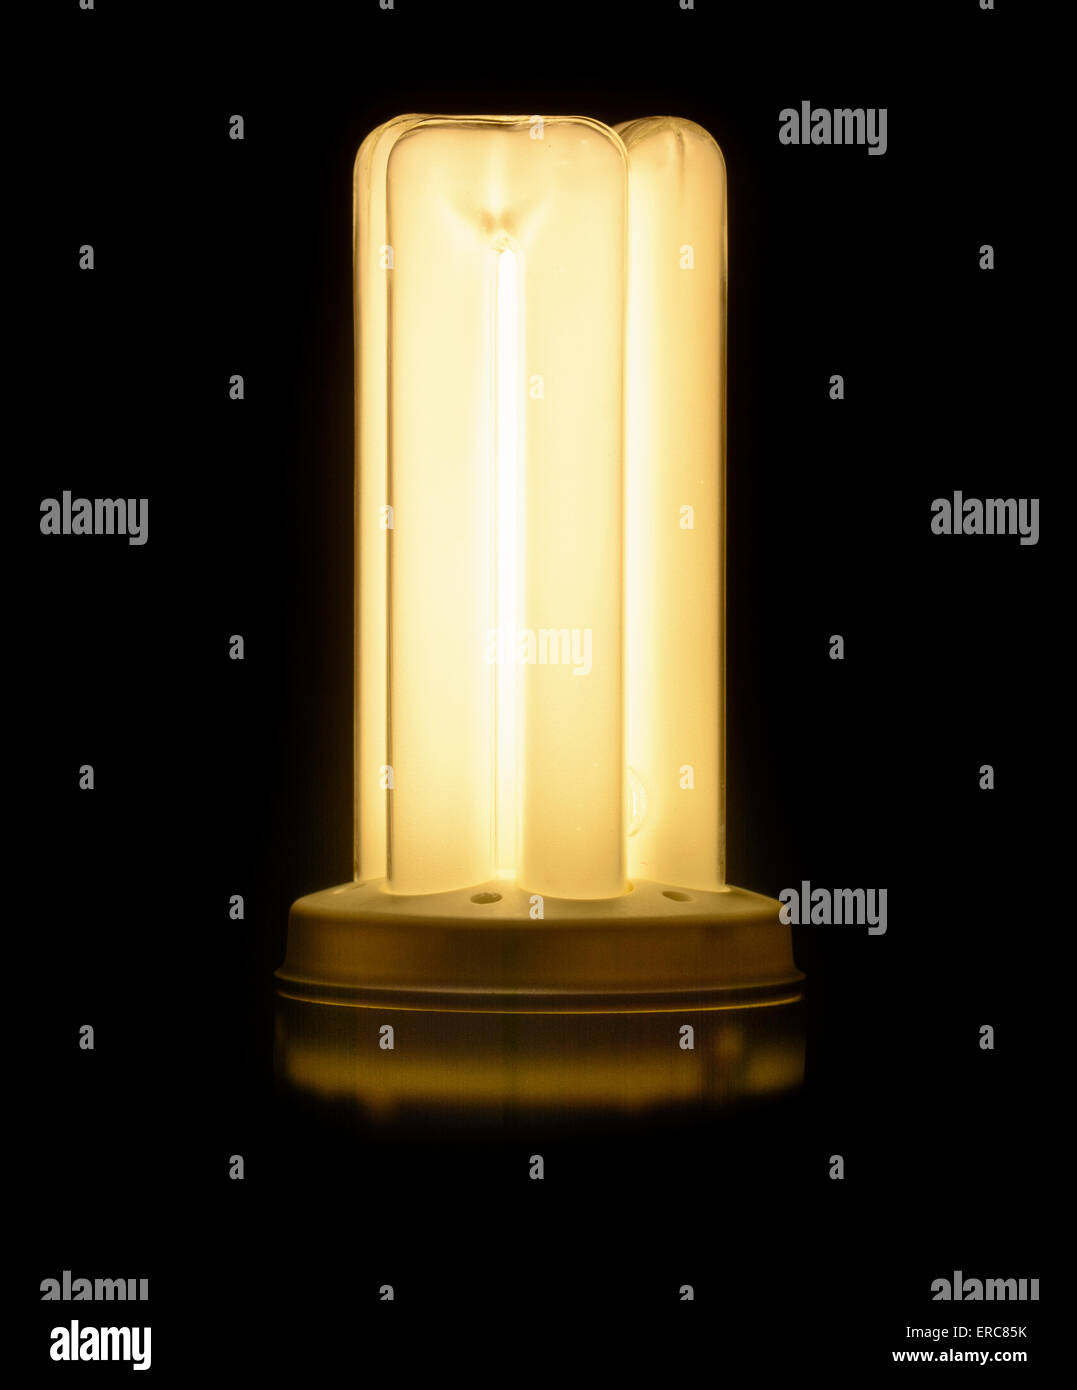 Basso consumo di energia fluorescente compatta lampadina luminosa (lampadina CFL) - Acceso. Foto Stock